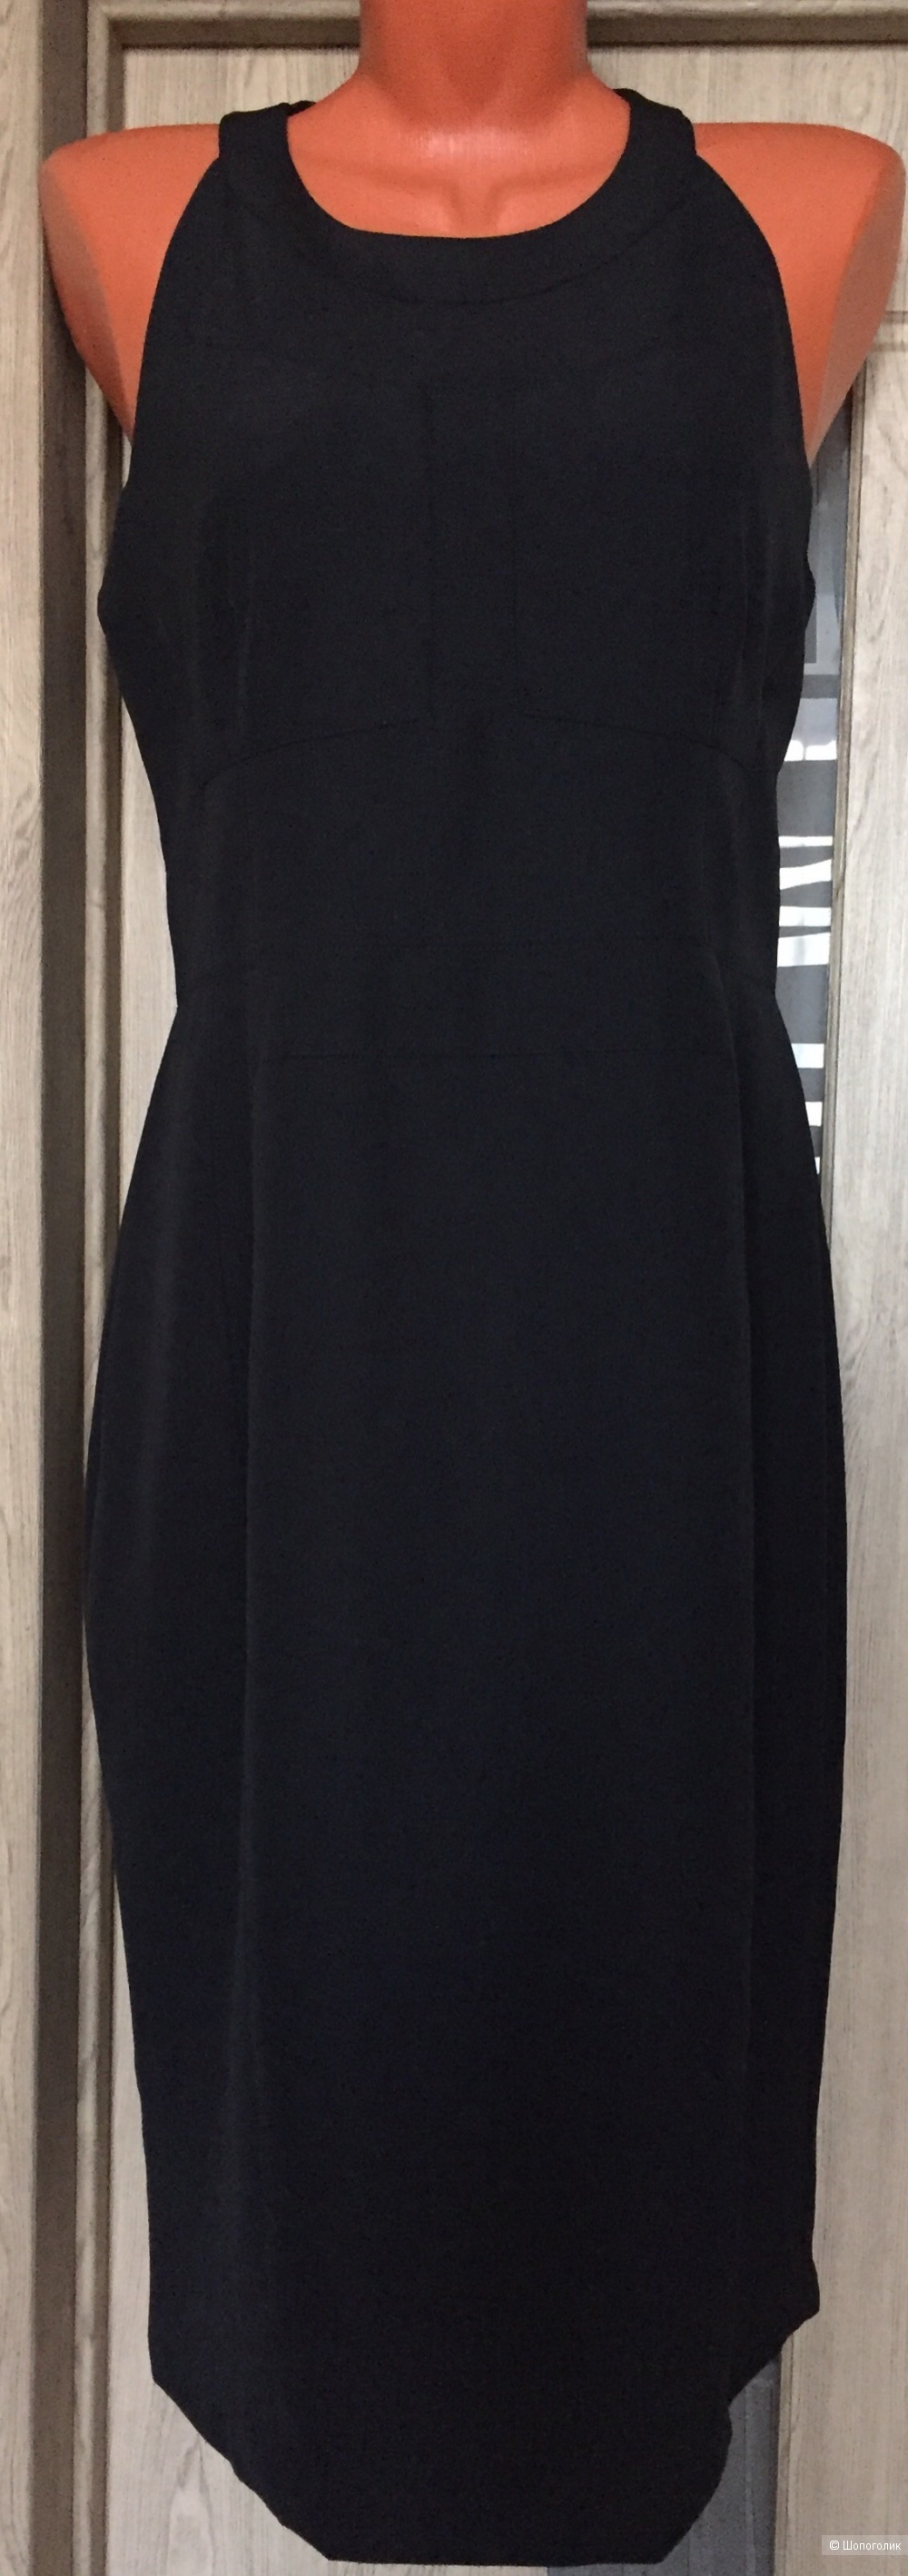 Платье Karen Millen 46-48 размер